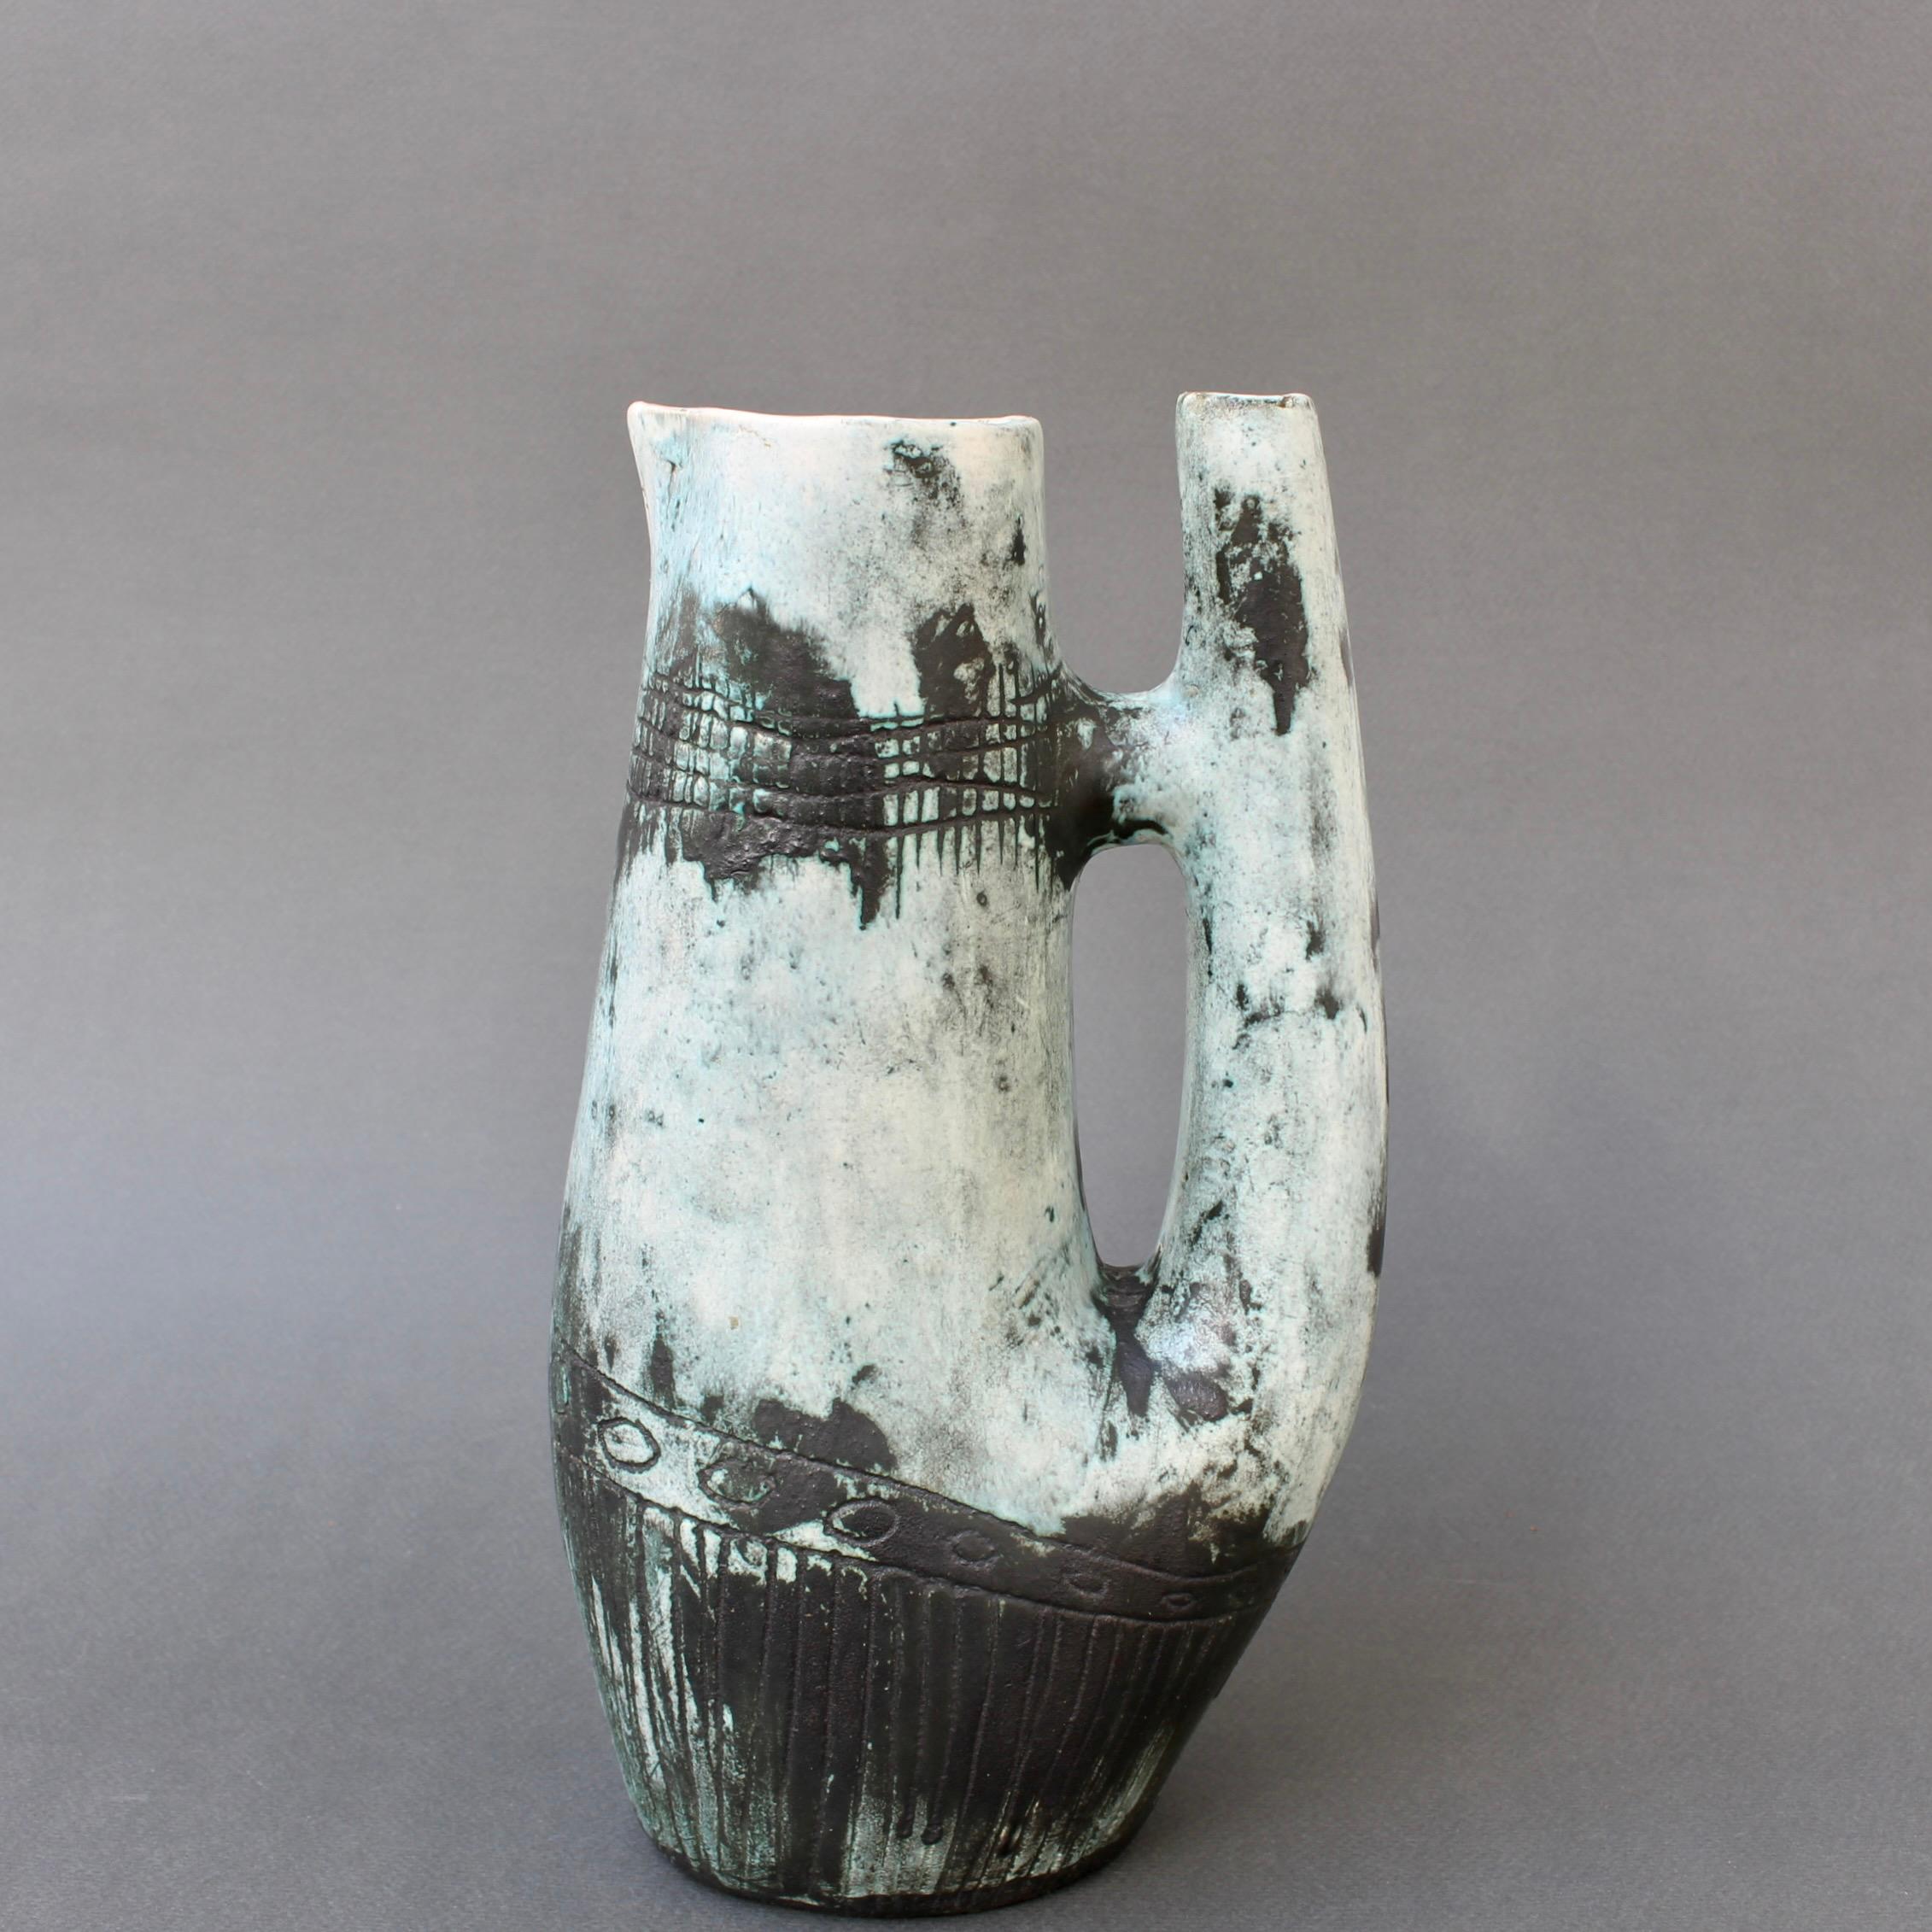 Pichet / carafe / vase décoratif en céramique française vintage (circa 1950s) par Jacques Blin. Le vase est d'une teinte subtile recouverte de la glaçure brumeuse caractéristique de Blin. Il est décoré d'une frise de cercles autour du corps,